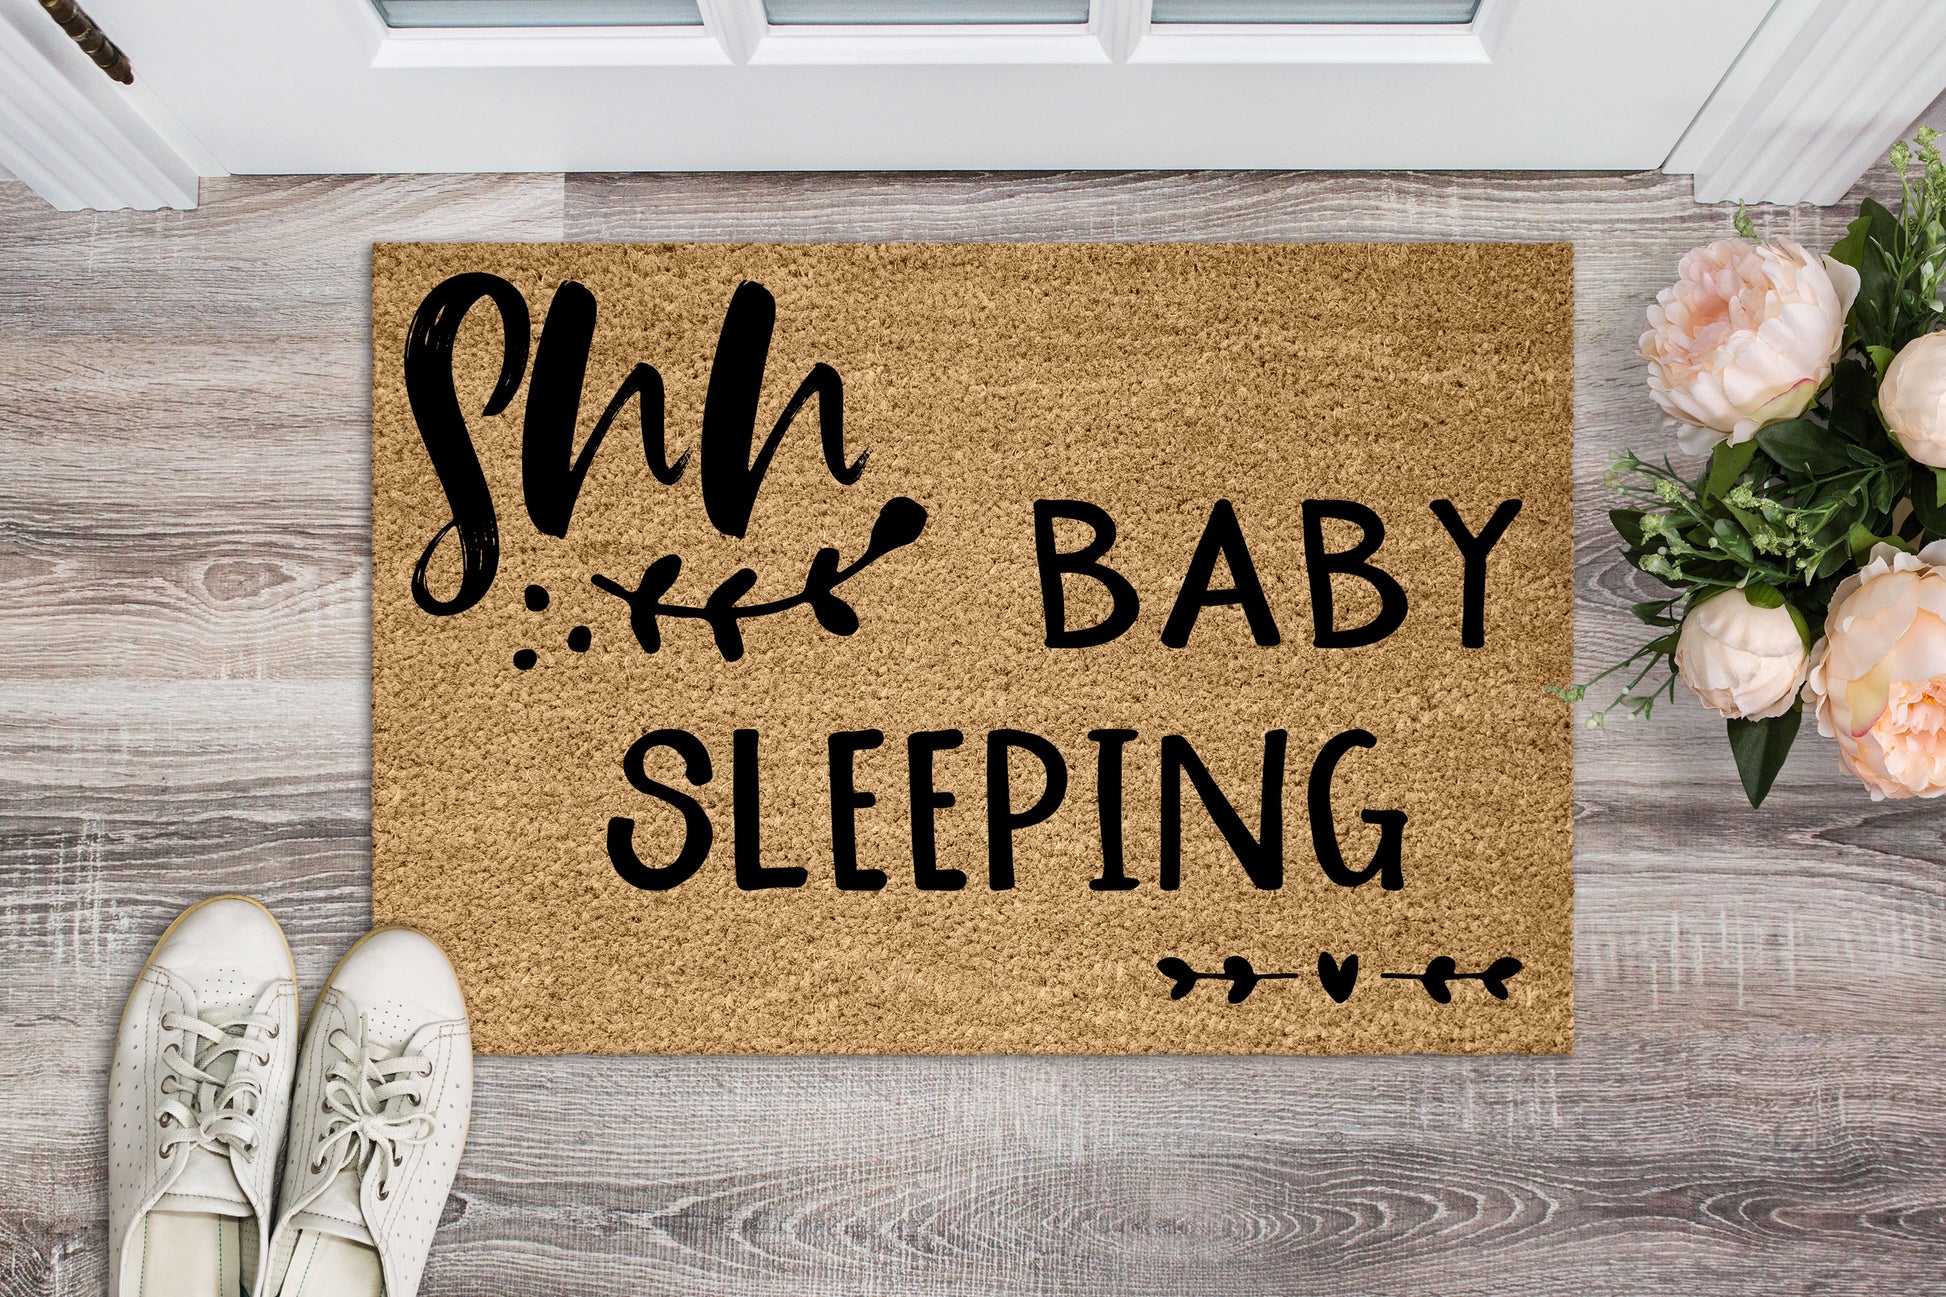 Shhh.. Baby Sleeping doormat - Personalised Doormat Australia